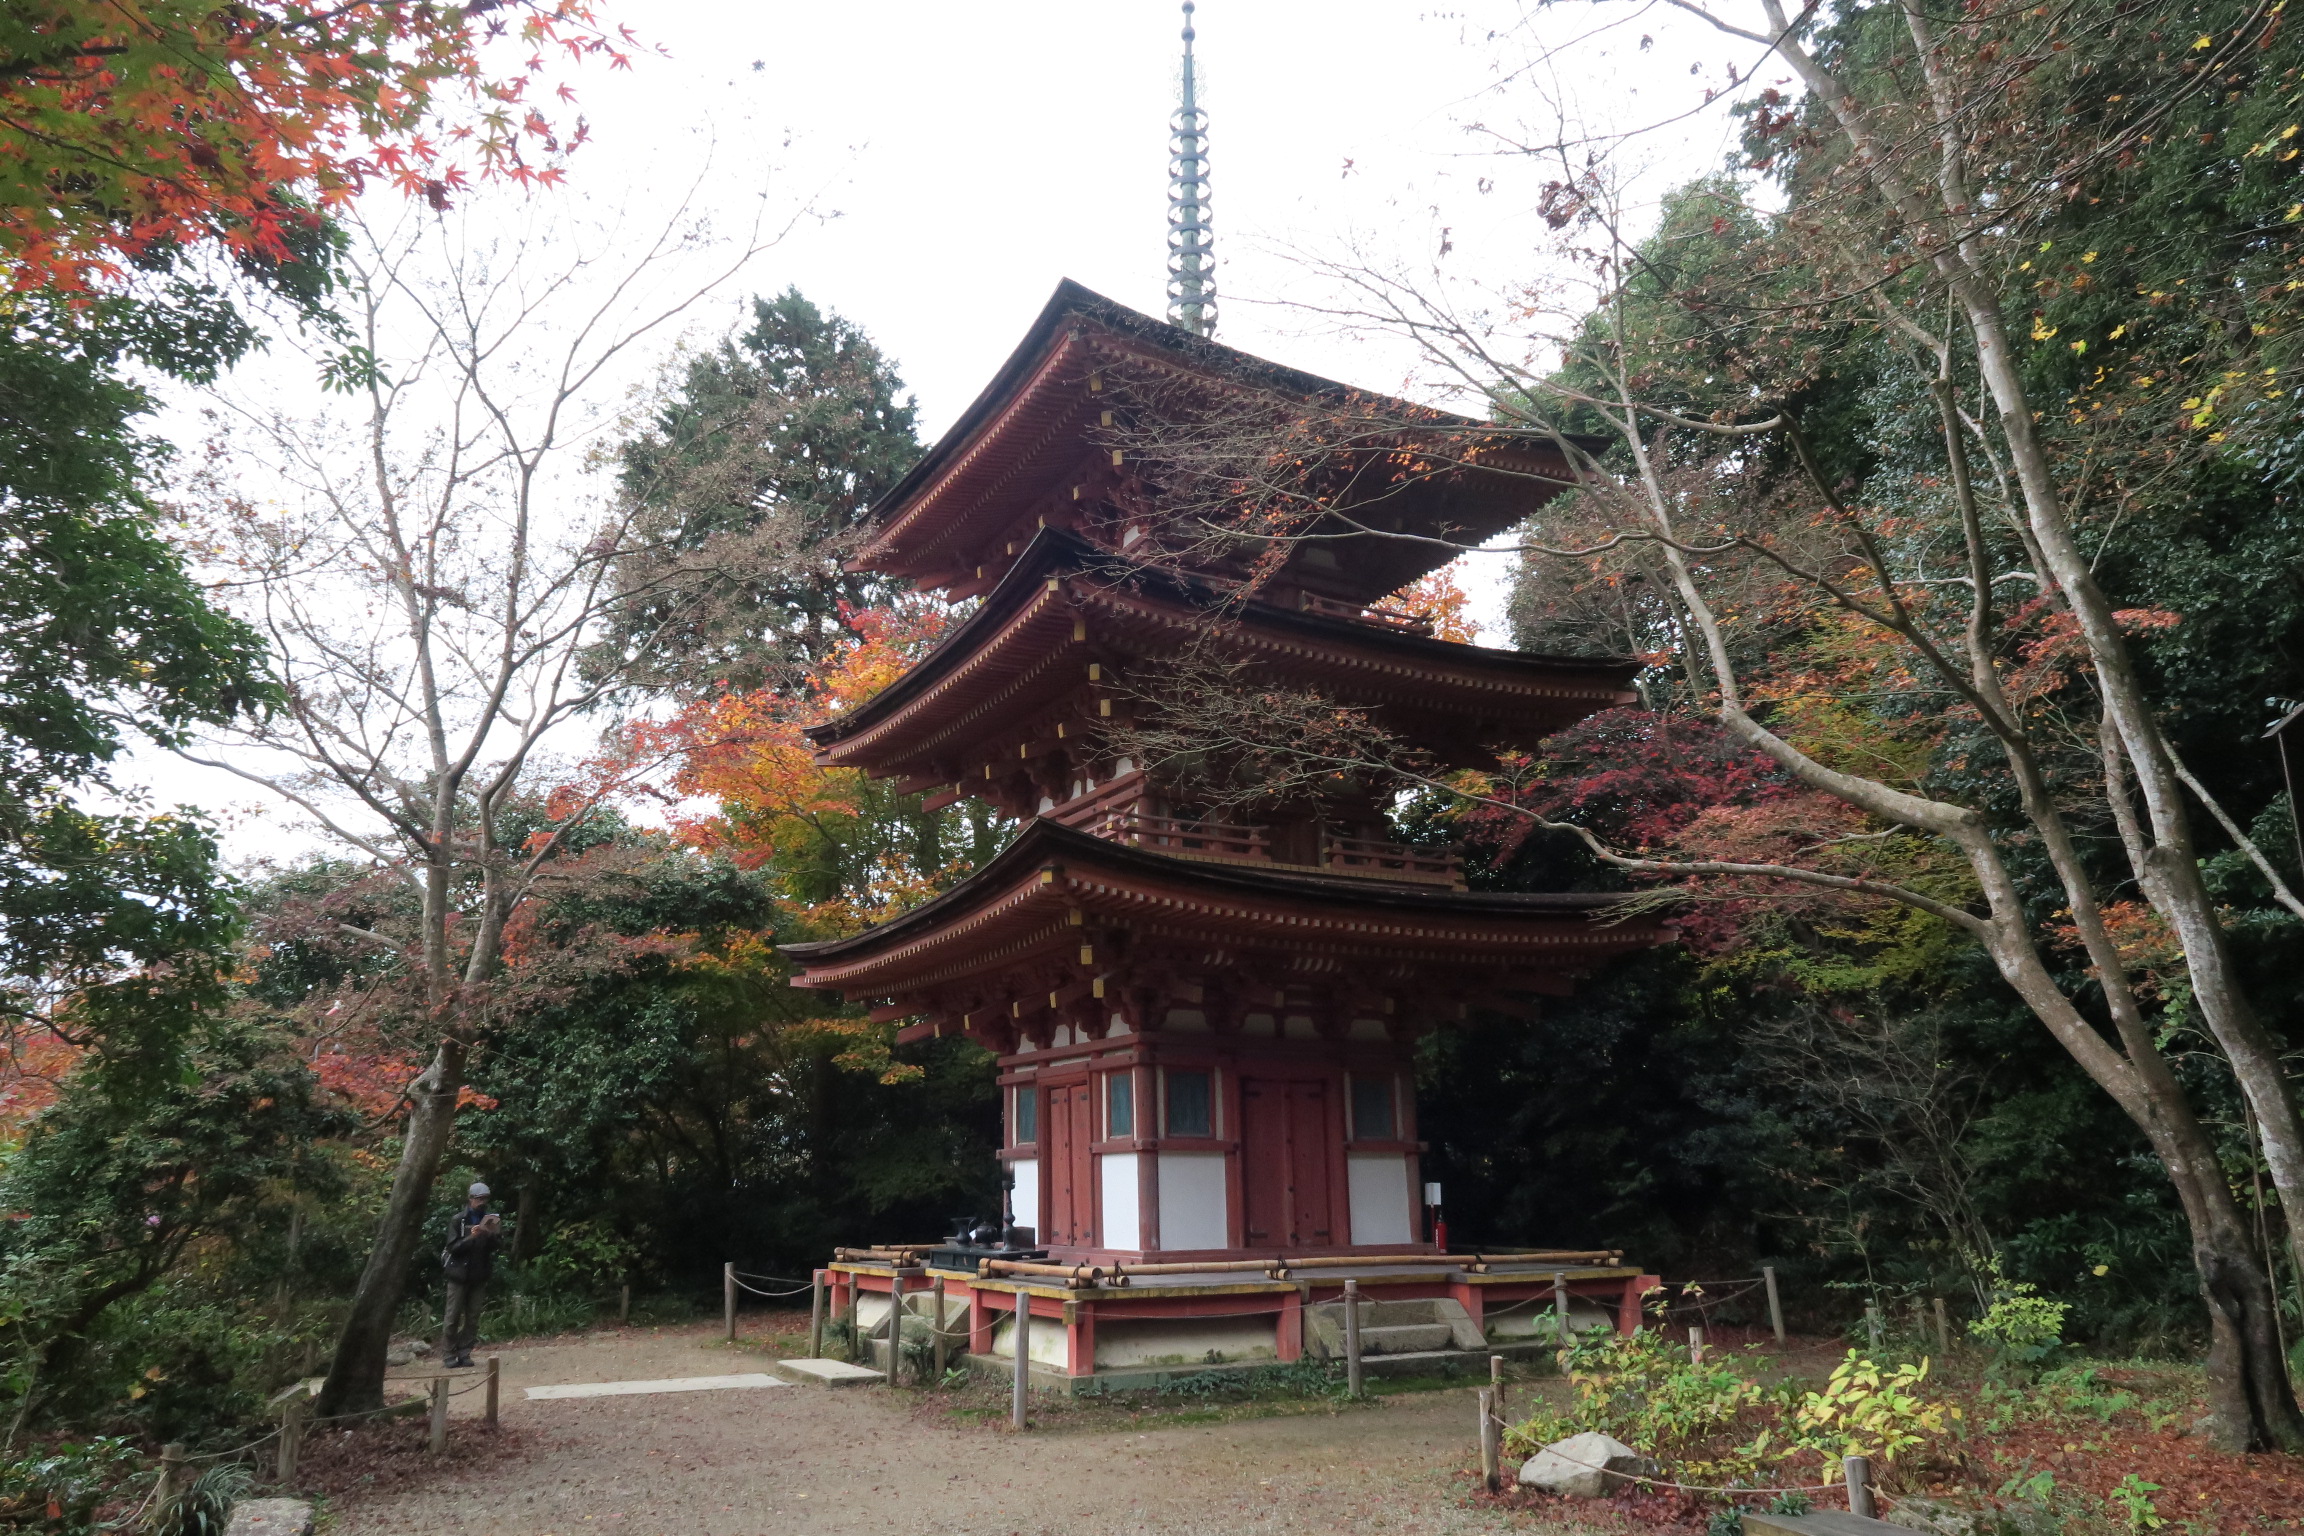 国宝の三重塔。京都の一条大宮から移建されたものらしいのですが、どこの寺院にあったものかは不明とのこと